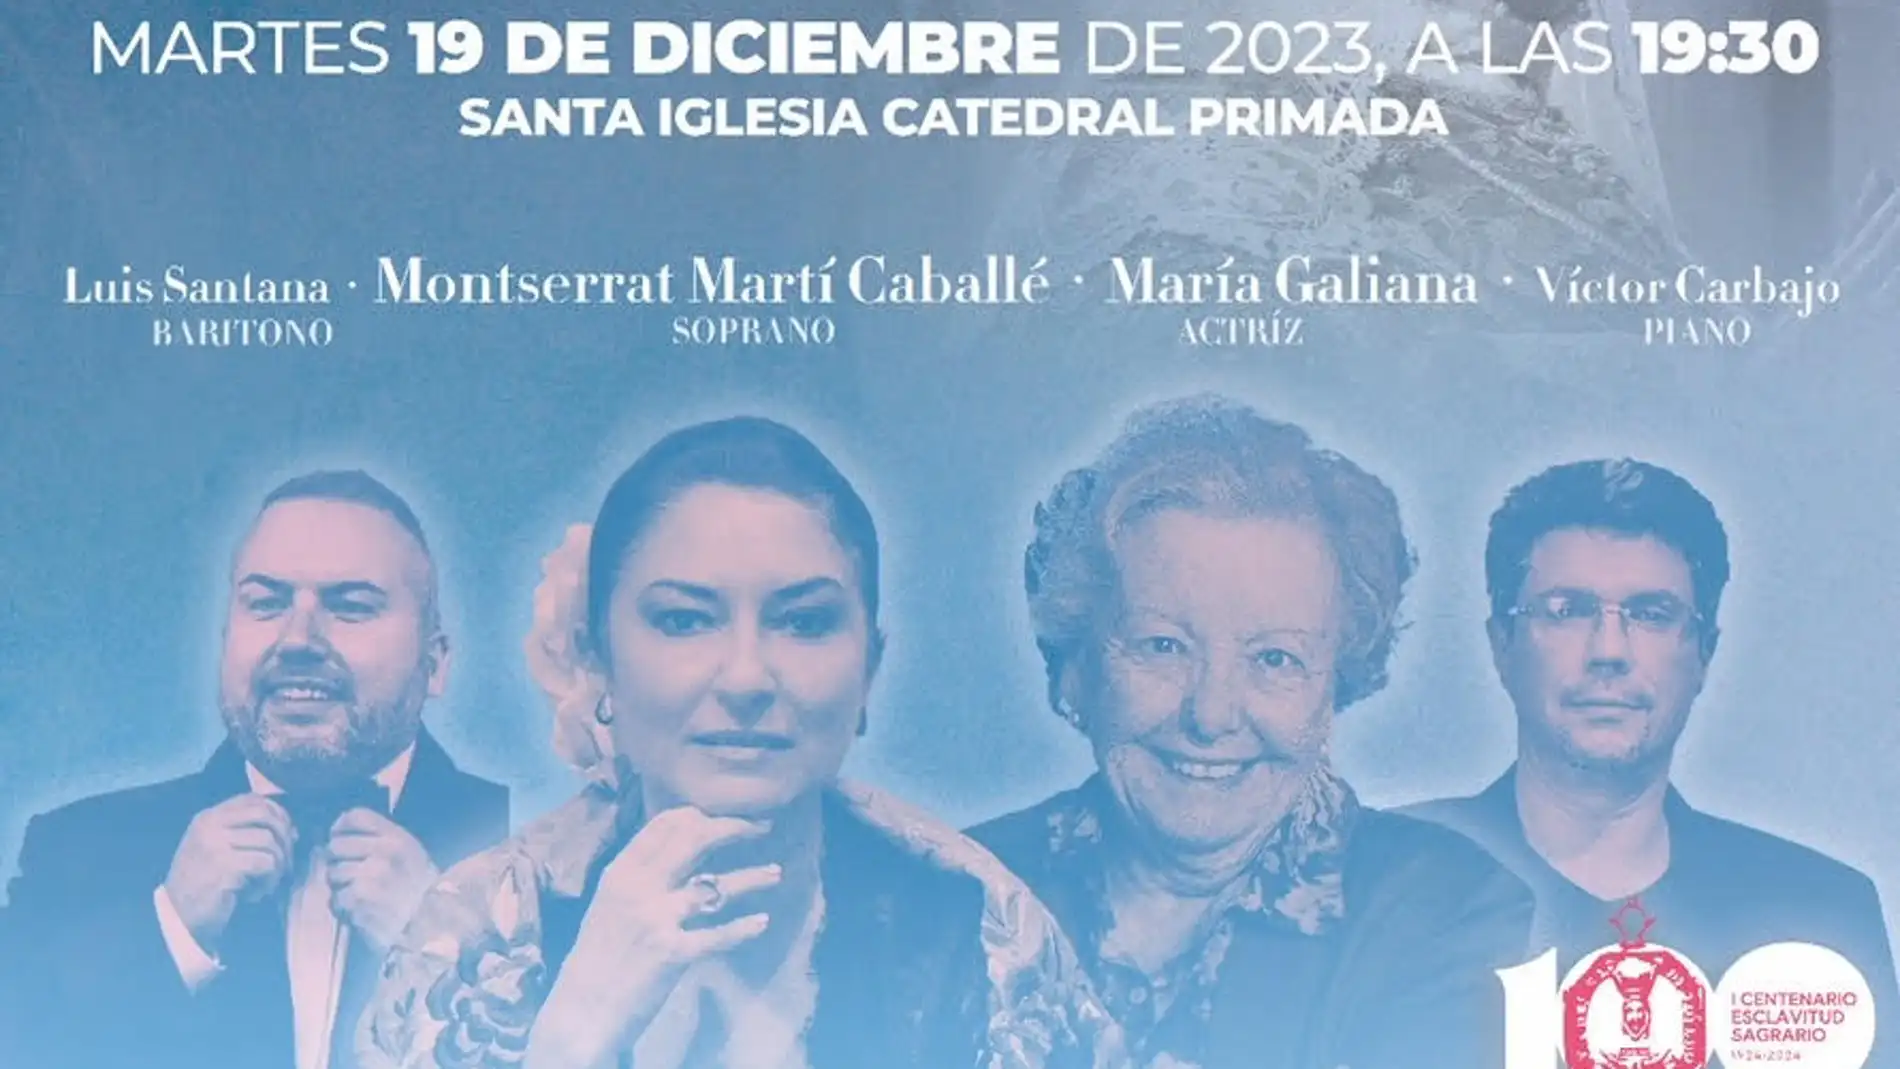 La actriz María Galiana unirá su voz a la de Montserrat Martí Caballé y Luis Santana en un concierto benéfico en Toledo